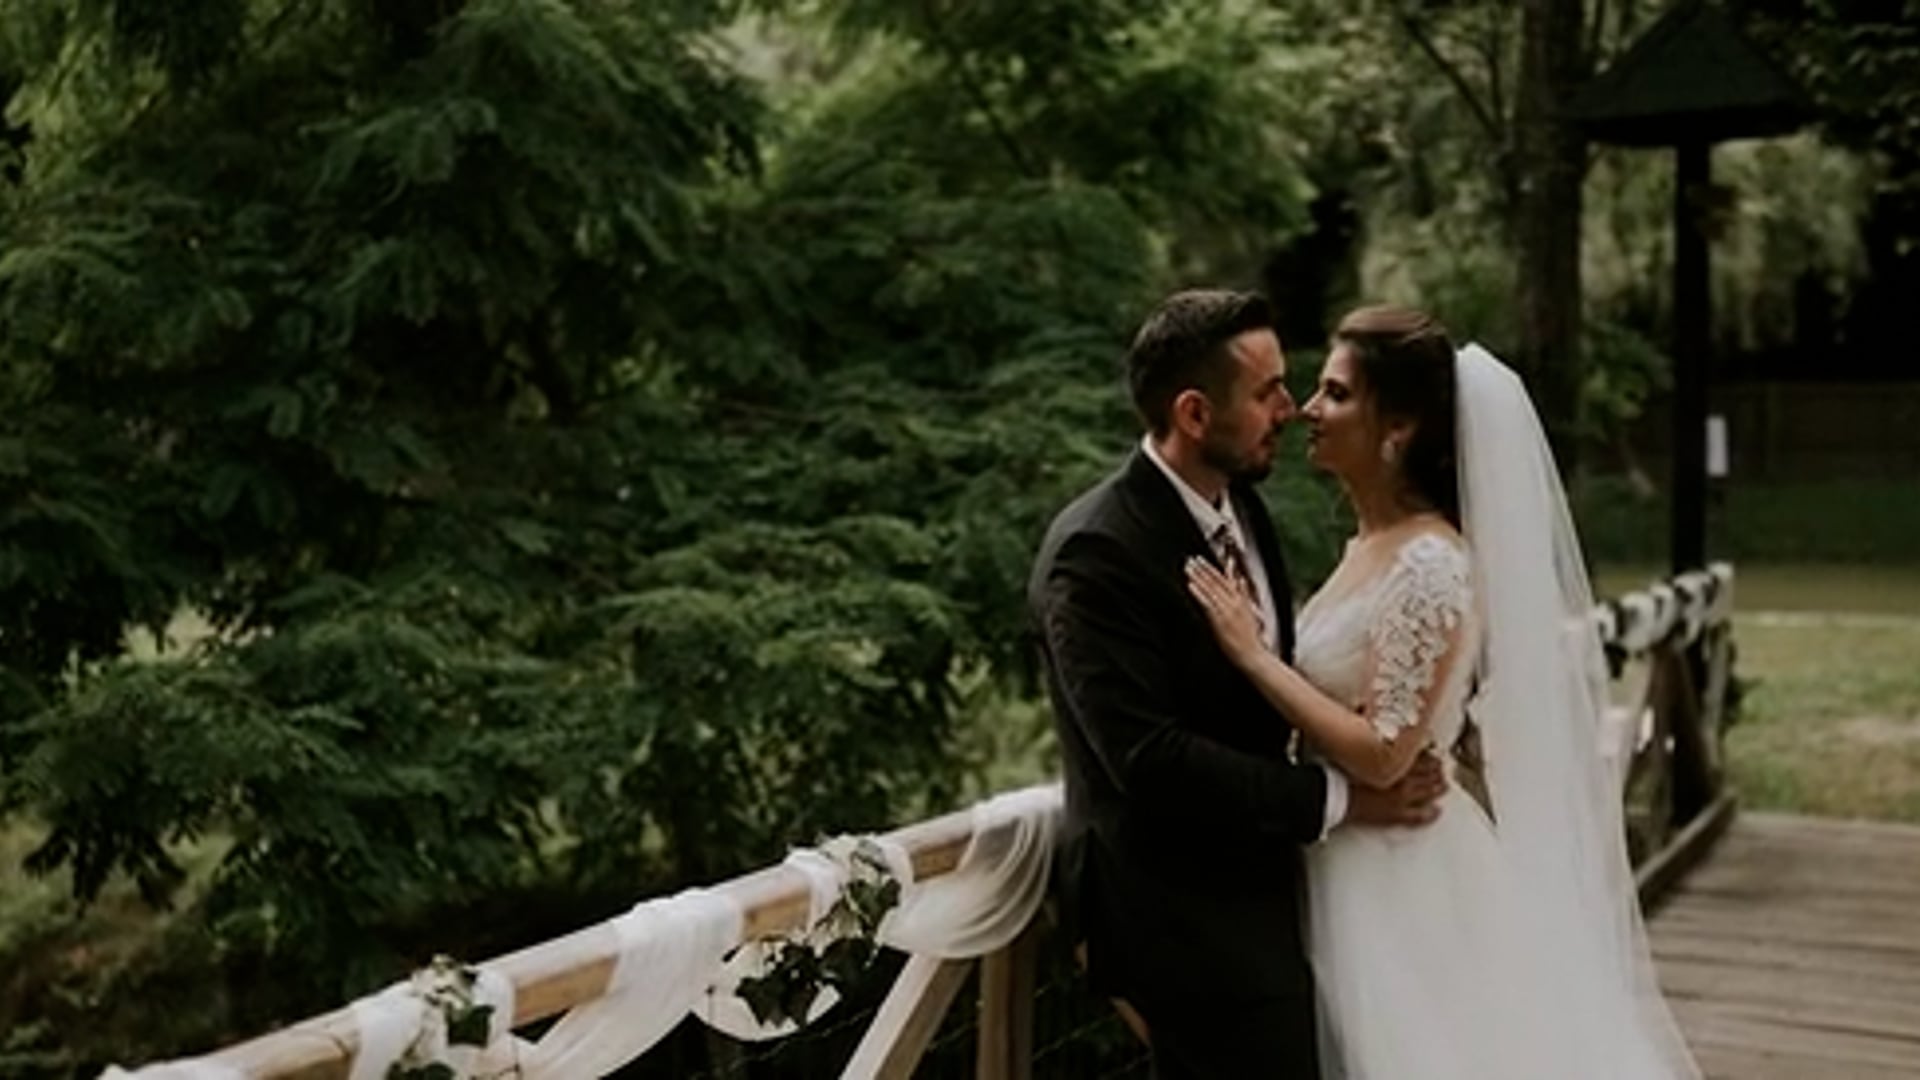 Flori & Eduard | Wedding Highlights